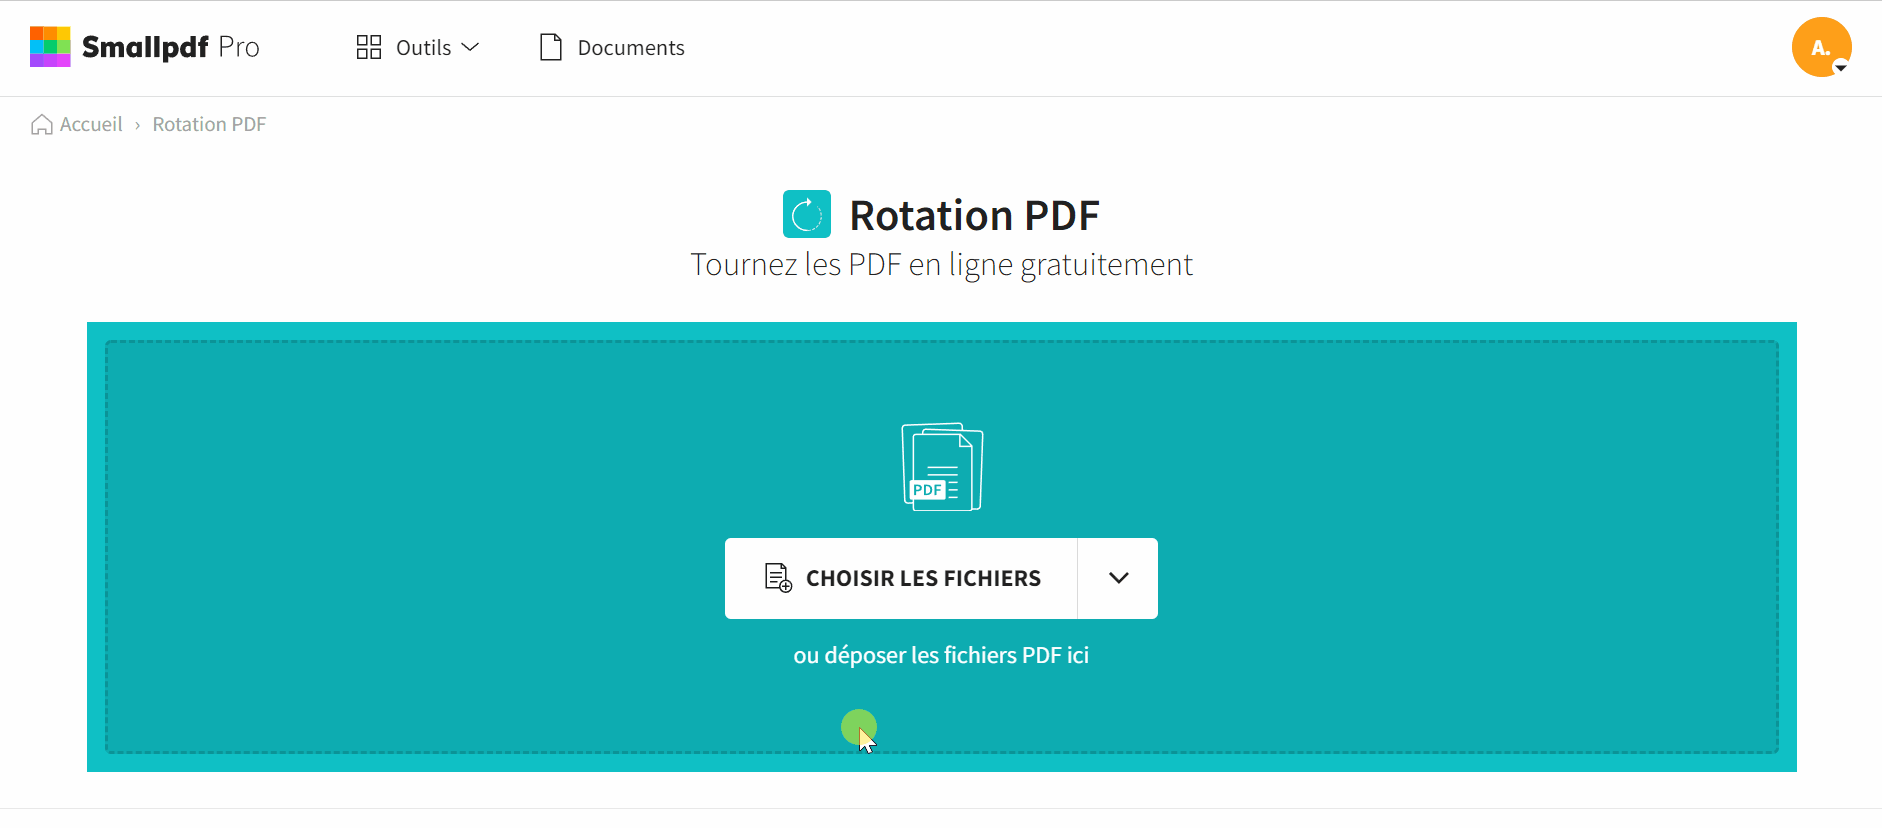 2021-11-24 - Comment faire pivoter une image PDF en ligne gratuitement - outil Rotation PDF, un seul document